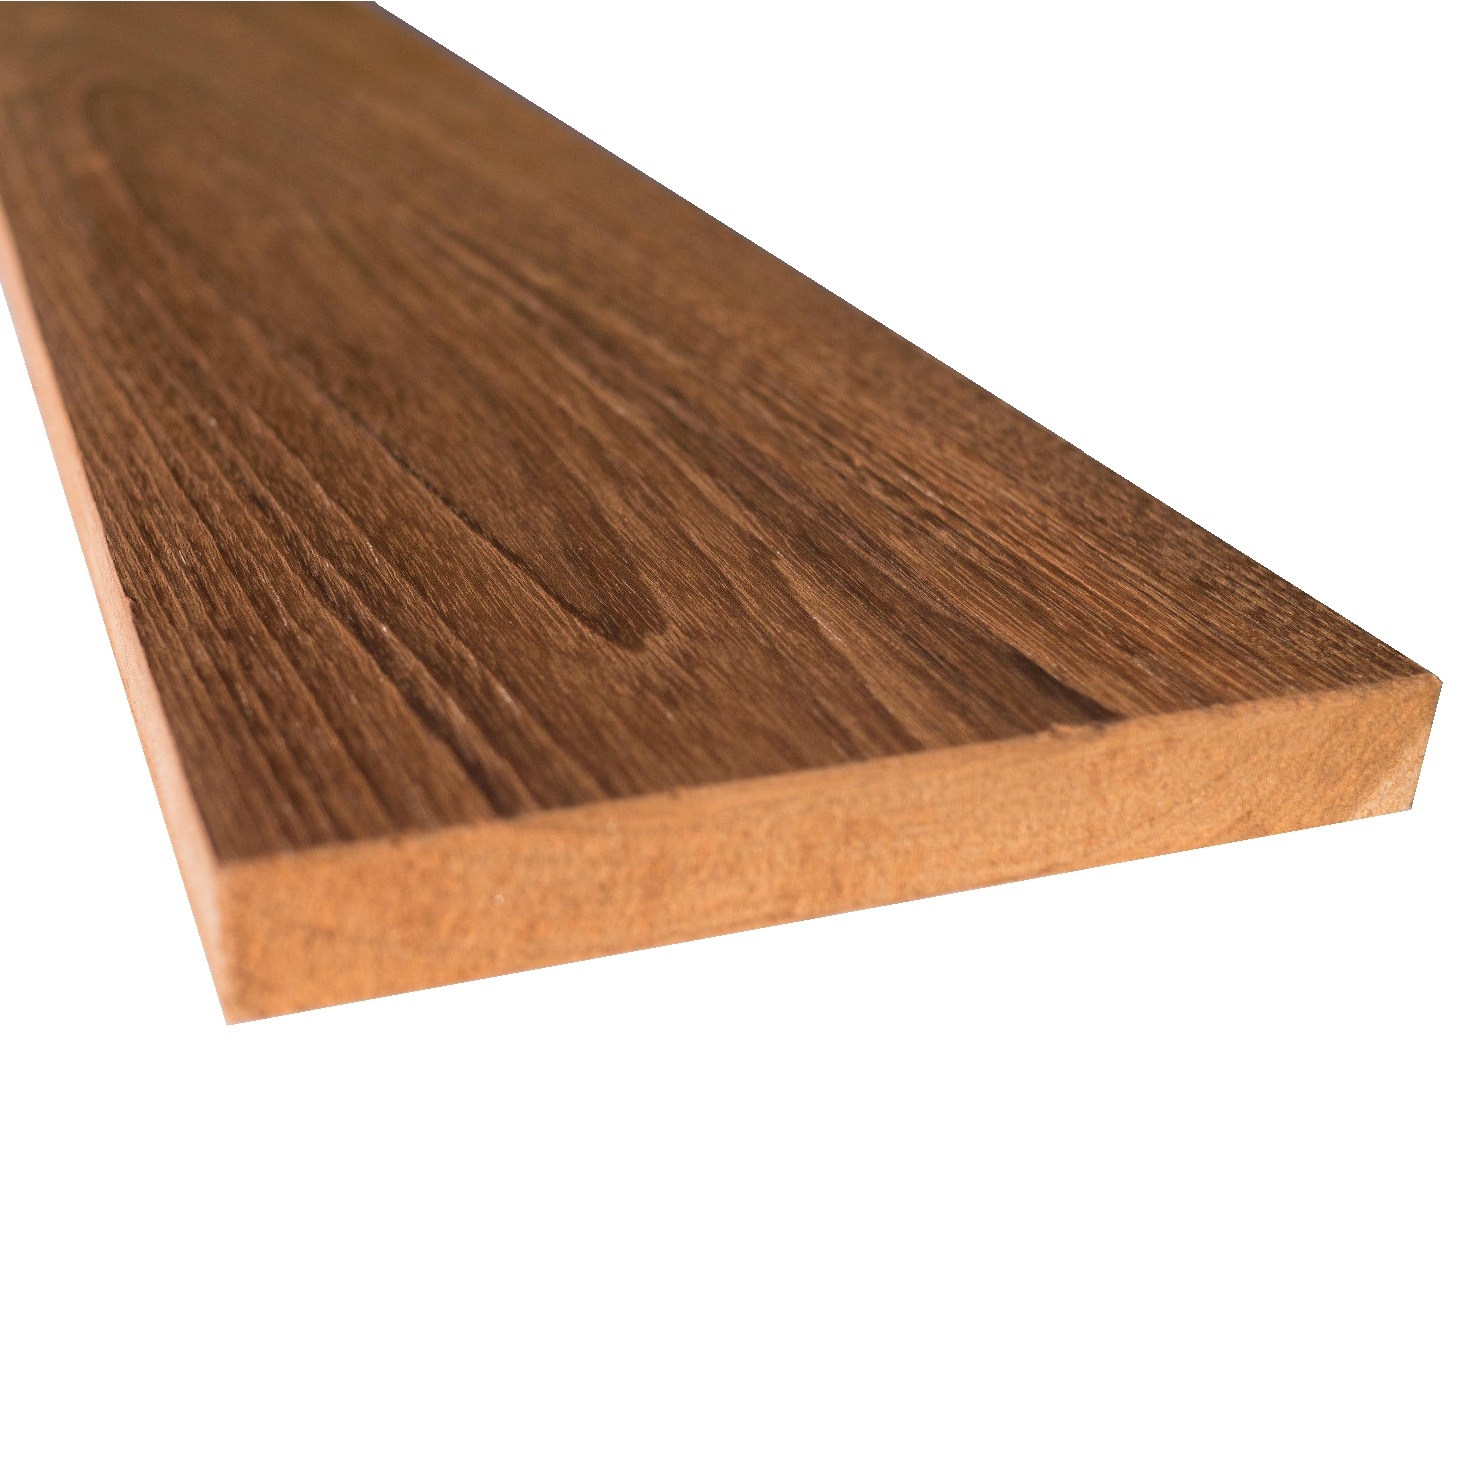 Tavola legno Teak piallata mm 21 x 190 x 2400